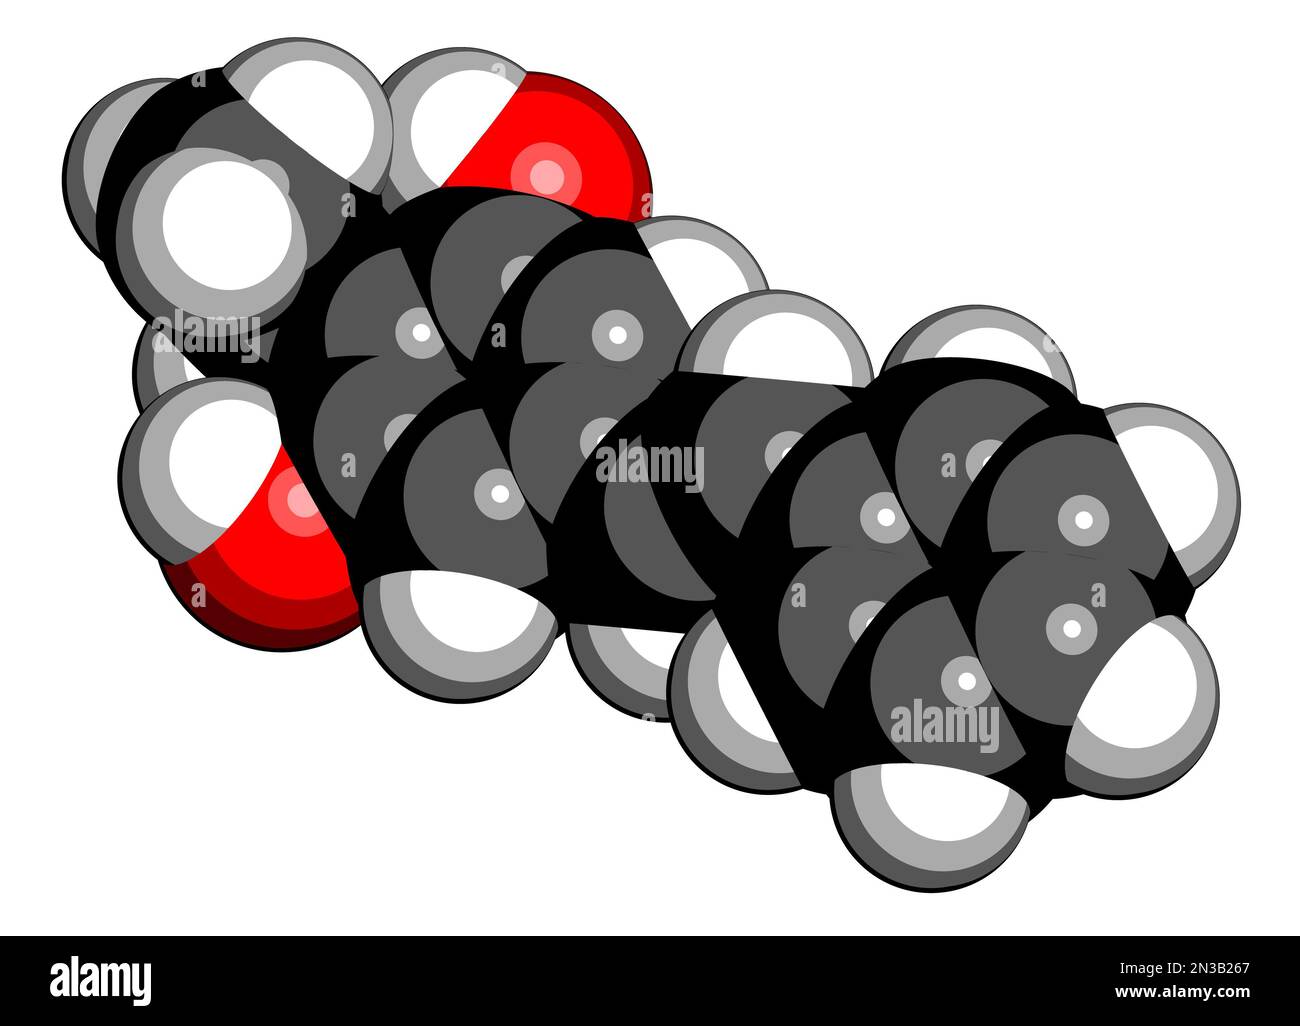 Molécule de médicament de psoriasis de Tapinarof. 3D rendu. Les atomes sont représentés sous forme de sphères avec un codage couleur conventionnel : hydrogène (blanc), carbone (noir), ox Banque D'Images